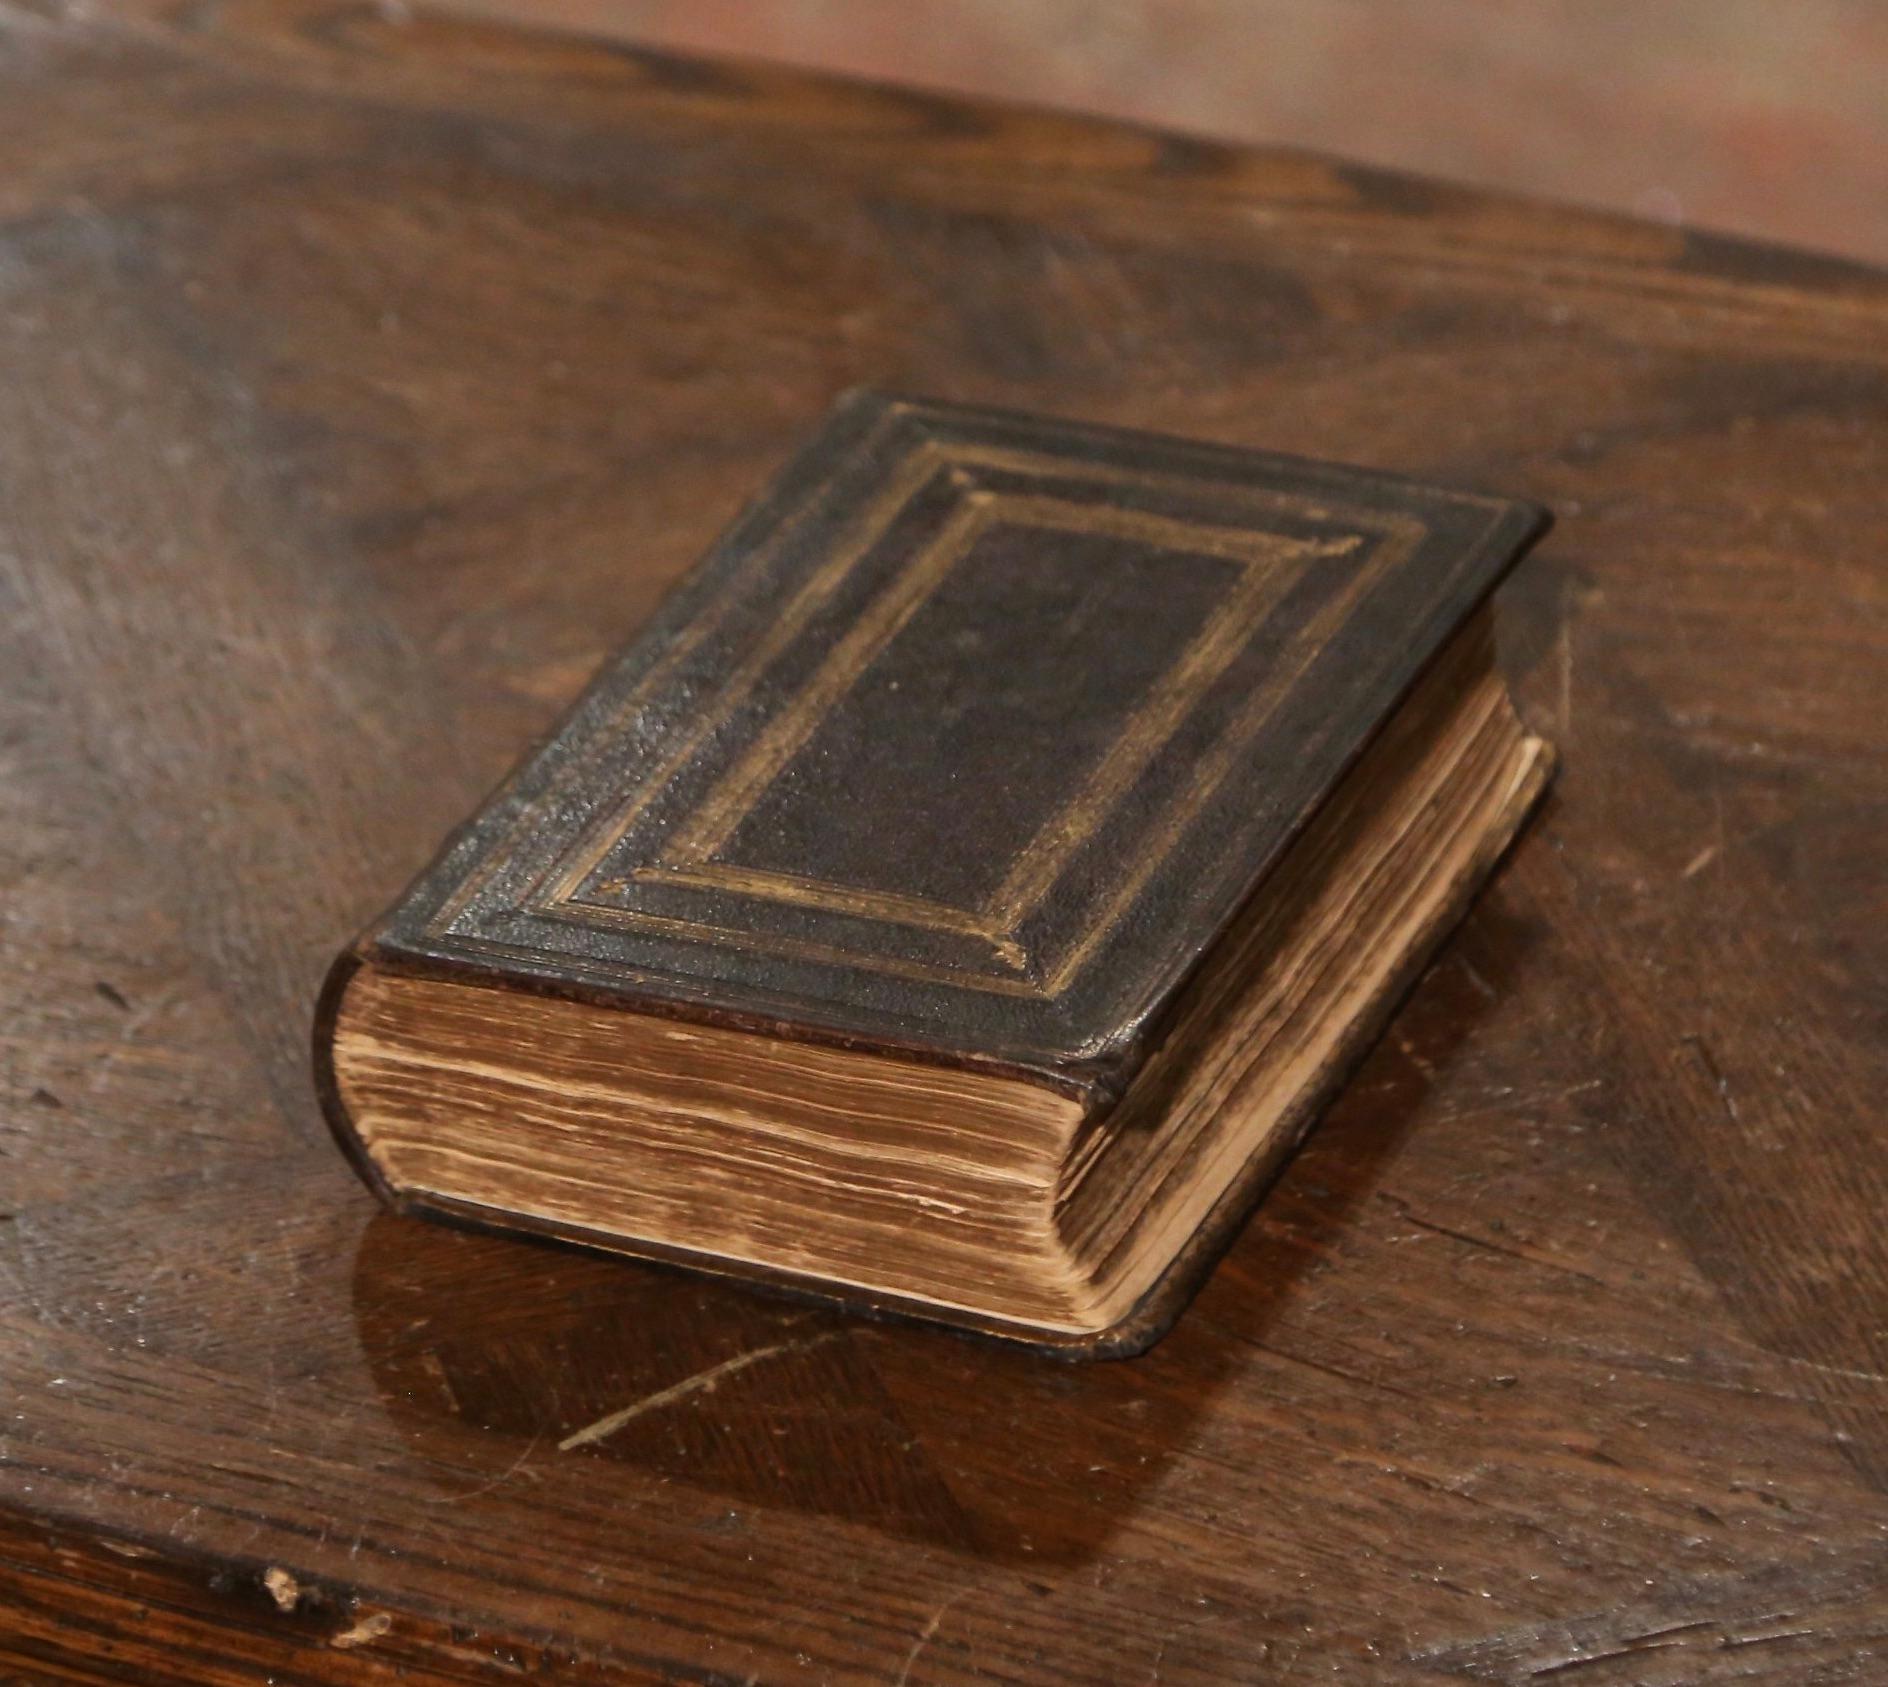 Écoutez la parole de Dieu avec cette Bible familiale ancienne. Imprimé à Londres par George Eyre et William Spottiswoode en 1847, le livre saint est habillé de cuir brun gaufré et doré, et encore embelli avec des bordures de pages en feuilles